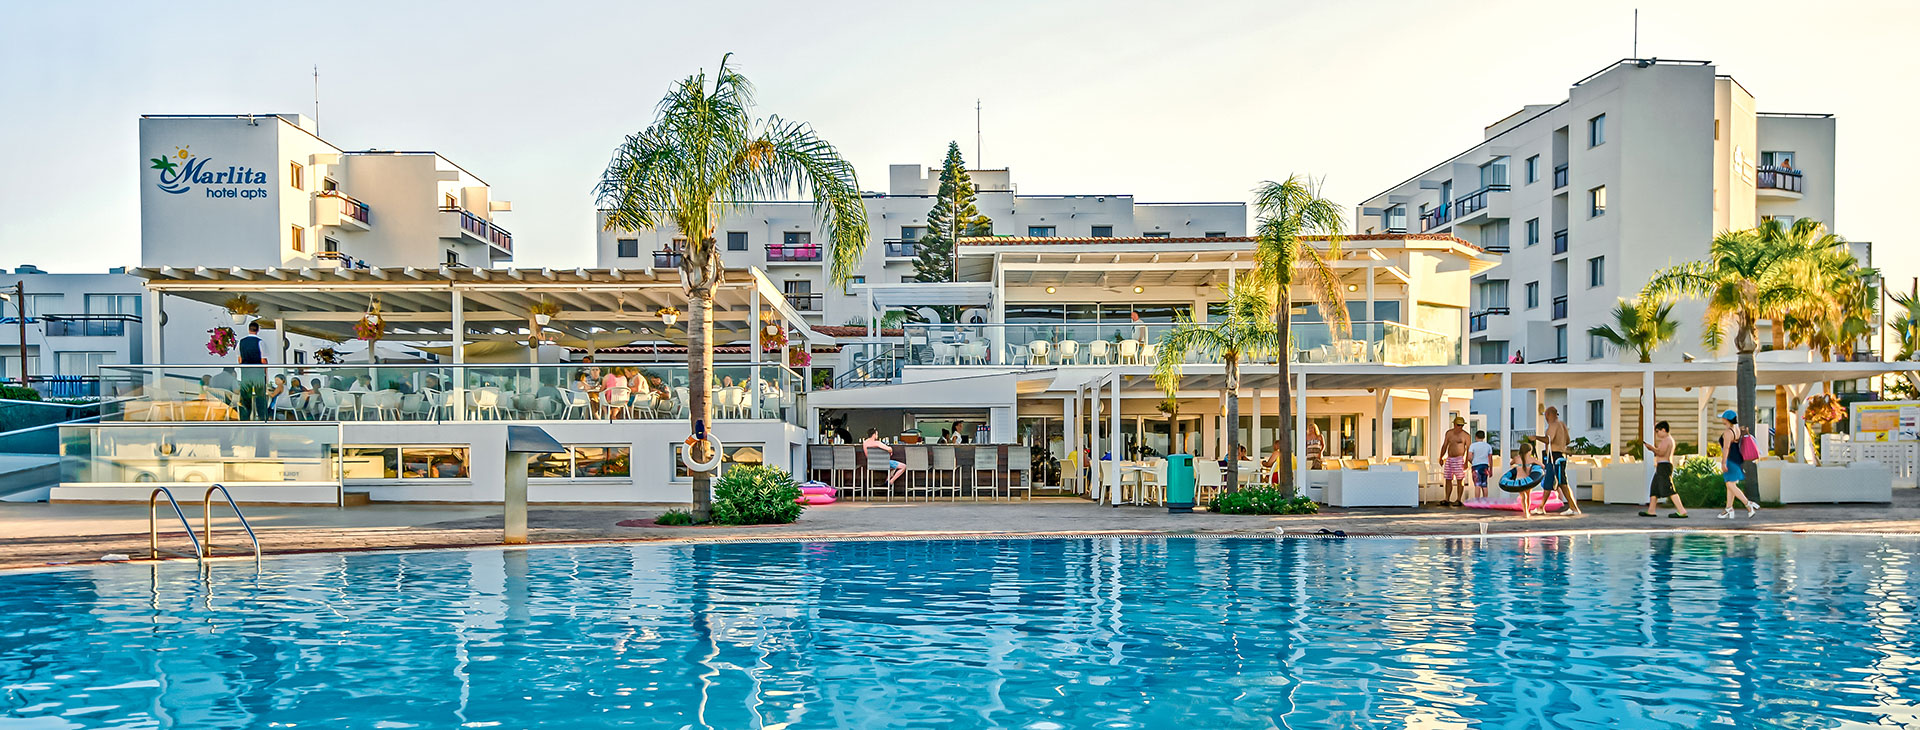 Marlita Beach Hotel & Apartments Obrázek1